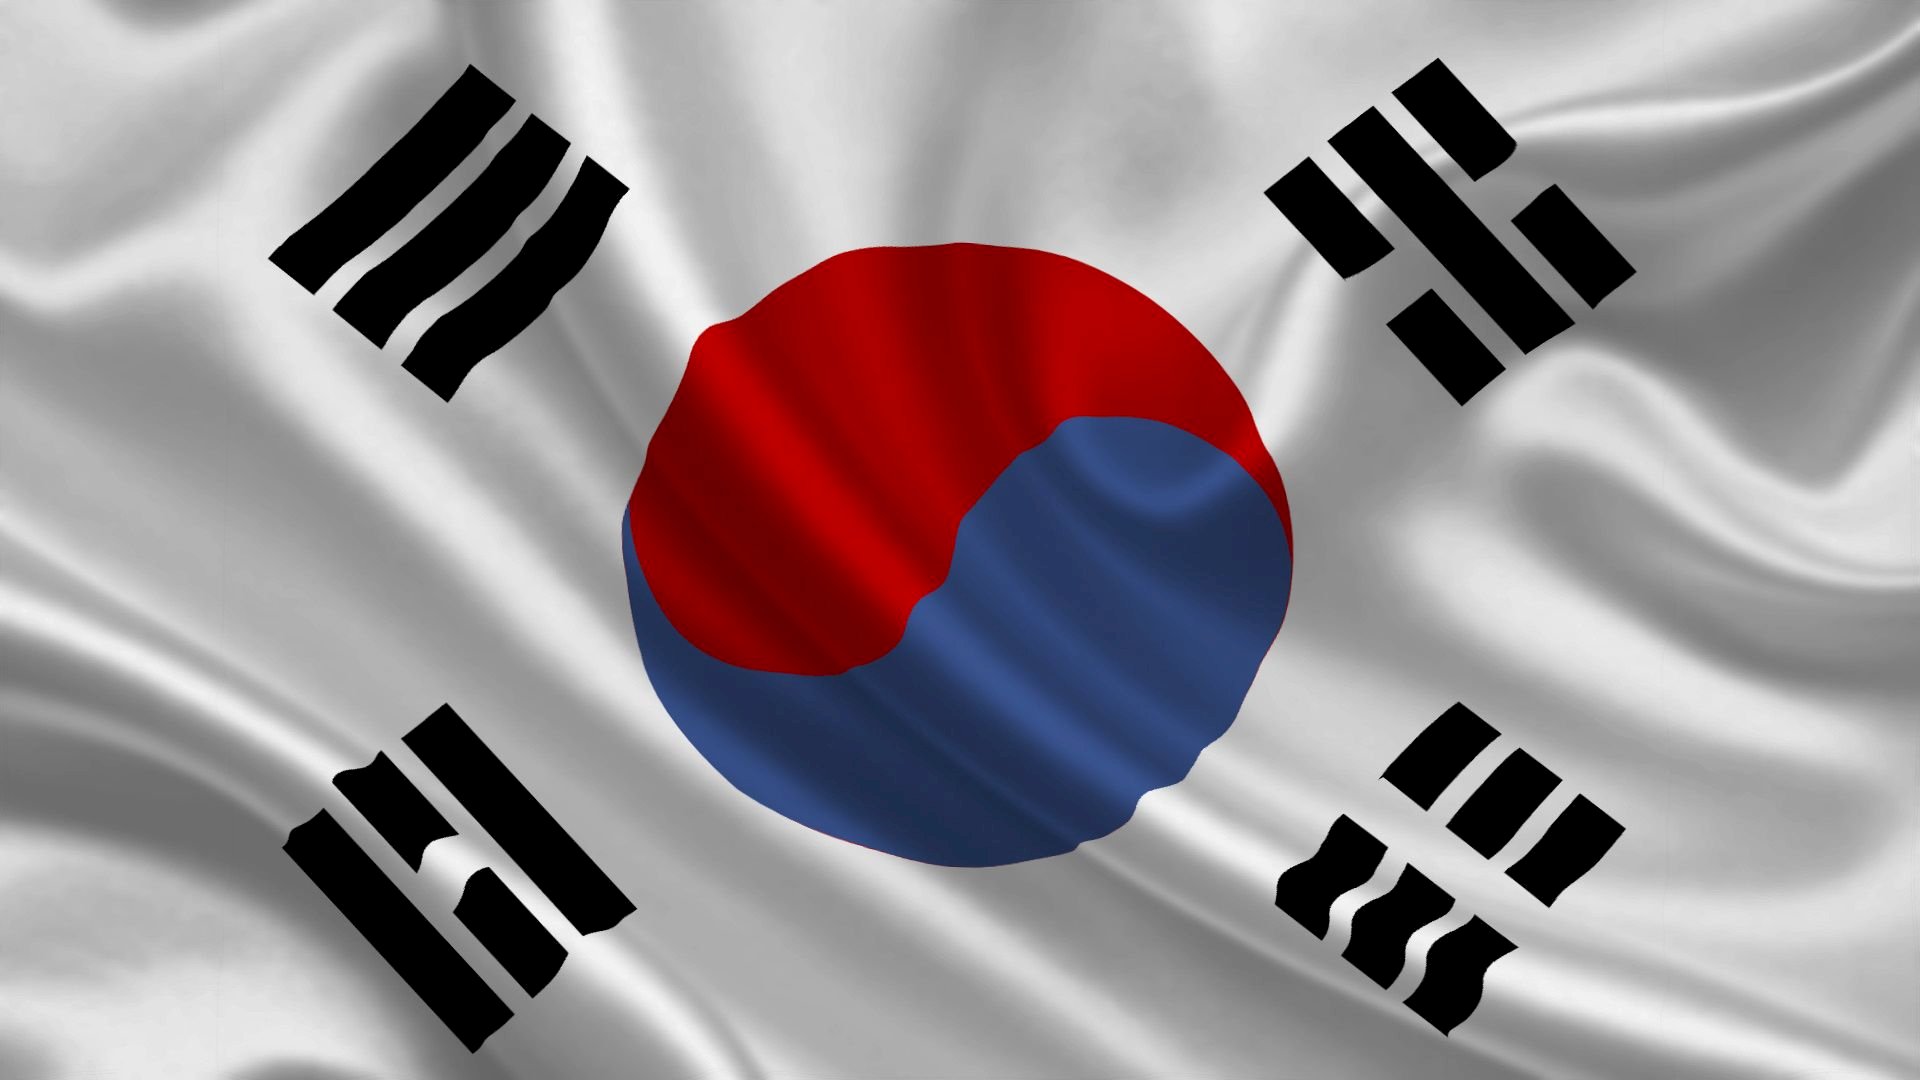 Background lá cờ Hàn Quốc: Background lá cờ Hàn Quốc là một hình ảnh tuyệt đẹp thể hiện sự tự hào và tinh thần quốc gia của Hàn Quốc. Với màu sắc và bố cục hài hòa, background này thể hiện được sự long trọng và quý phái của đất nước Hàn Quốc. Hãy khám phá hình ảnh đẹp của Background lá cờ Hàn Quốc để tìm hiểu thêm về văn hóa và lịch sử của đất nước này.